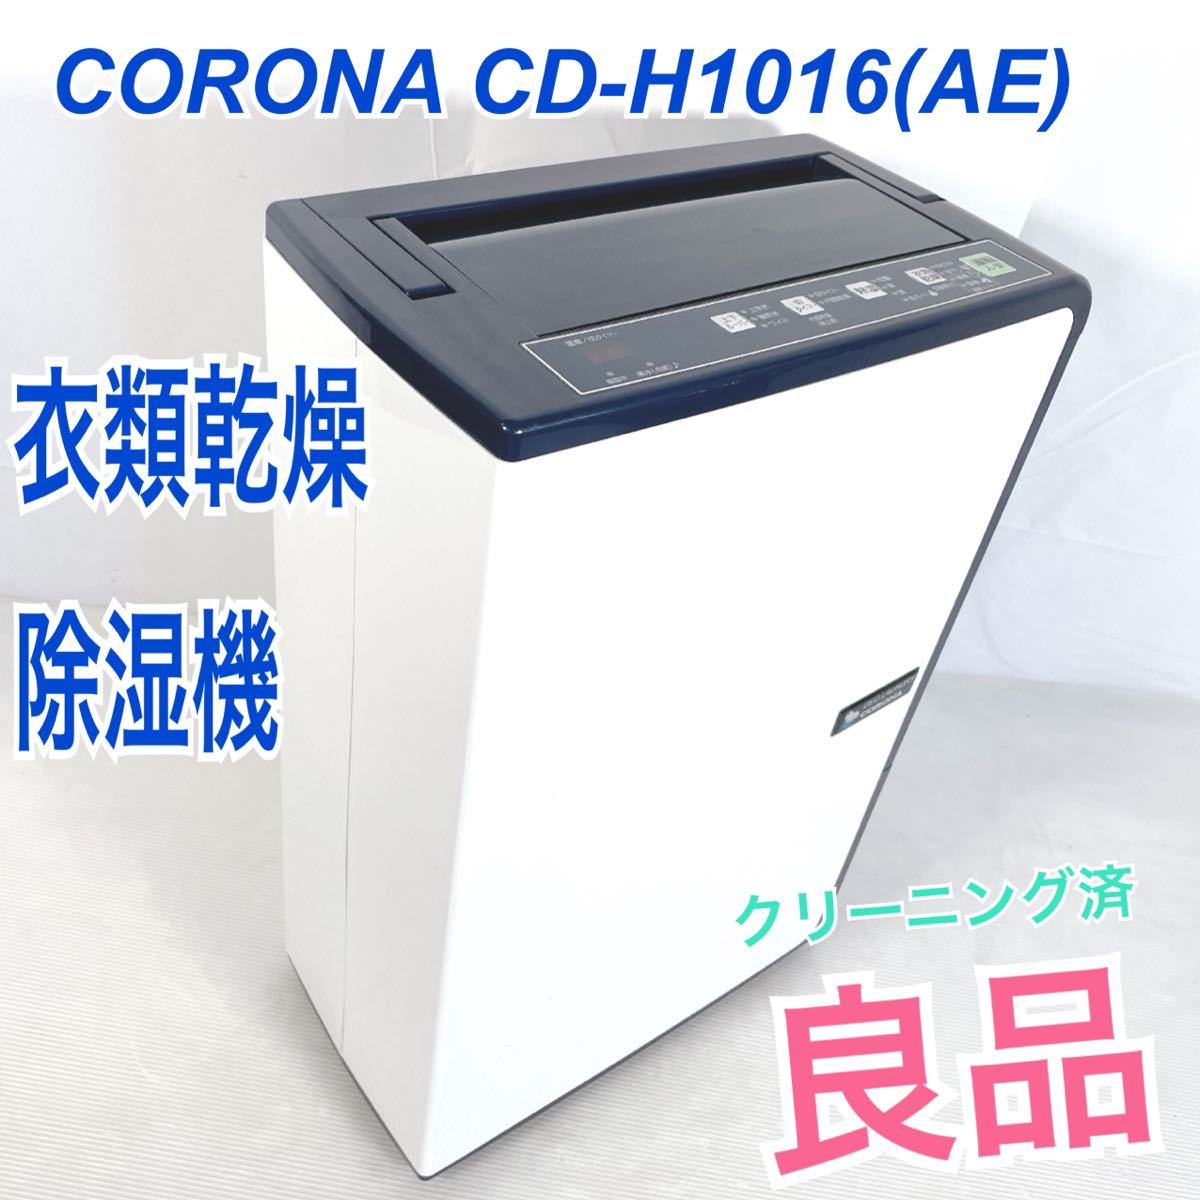 良品コロナ 衣類乾燥除湿機 CORONA CD-H1016(AE) www.etnasuite.com